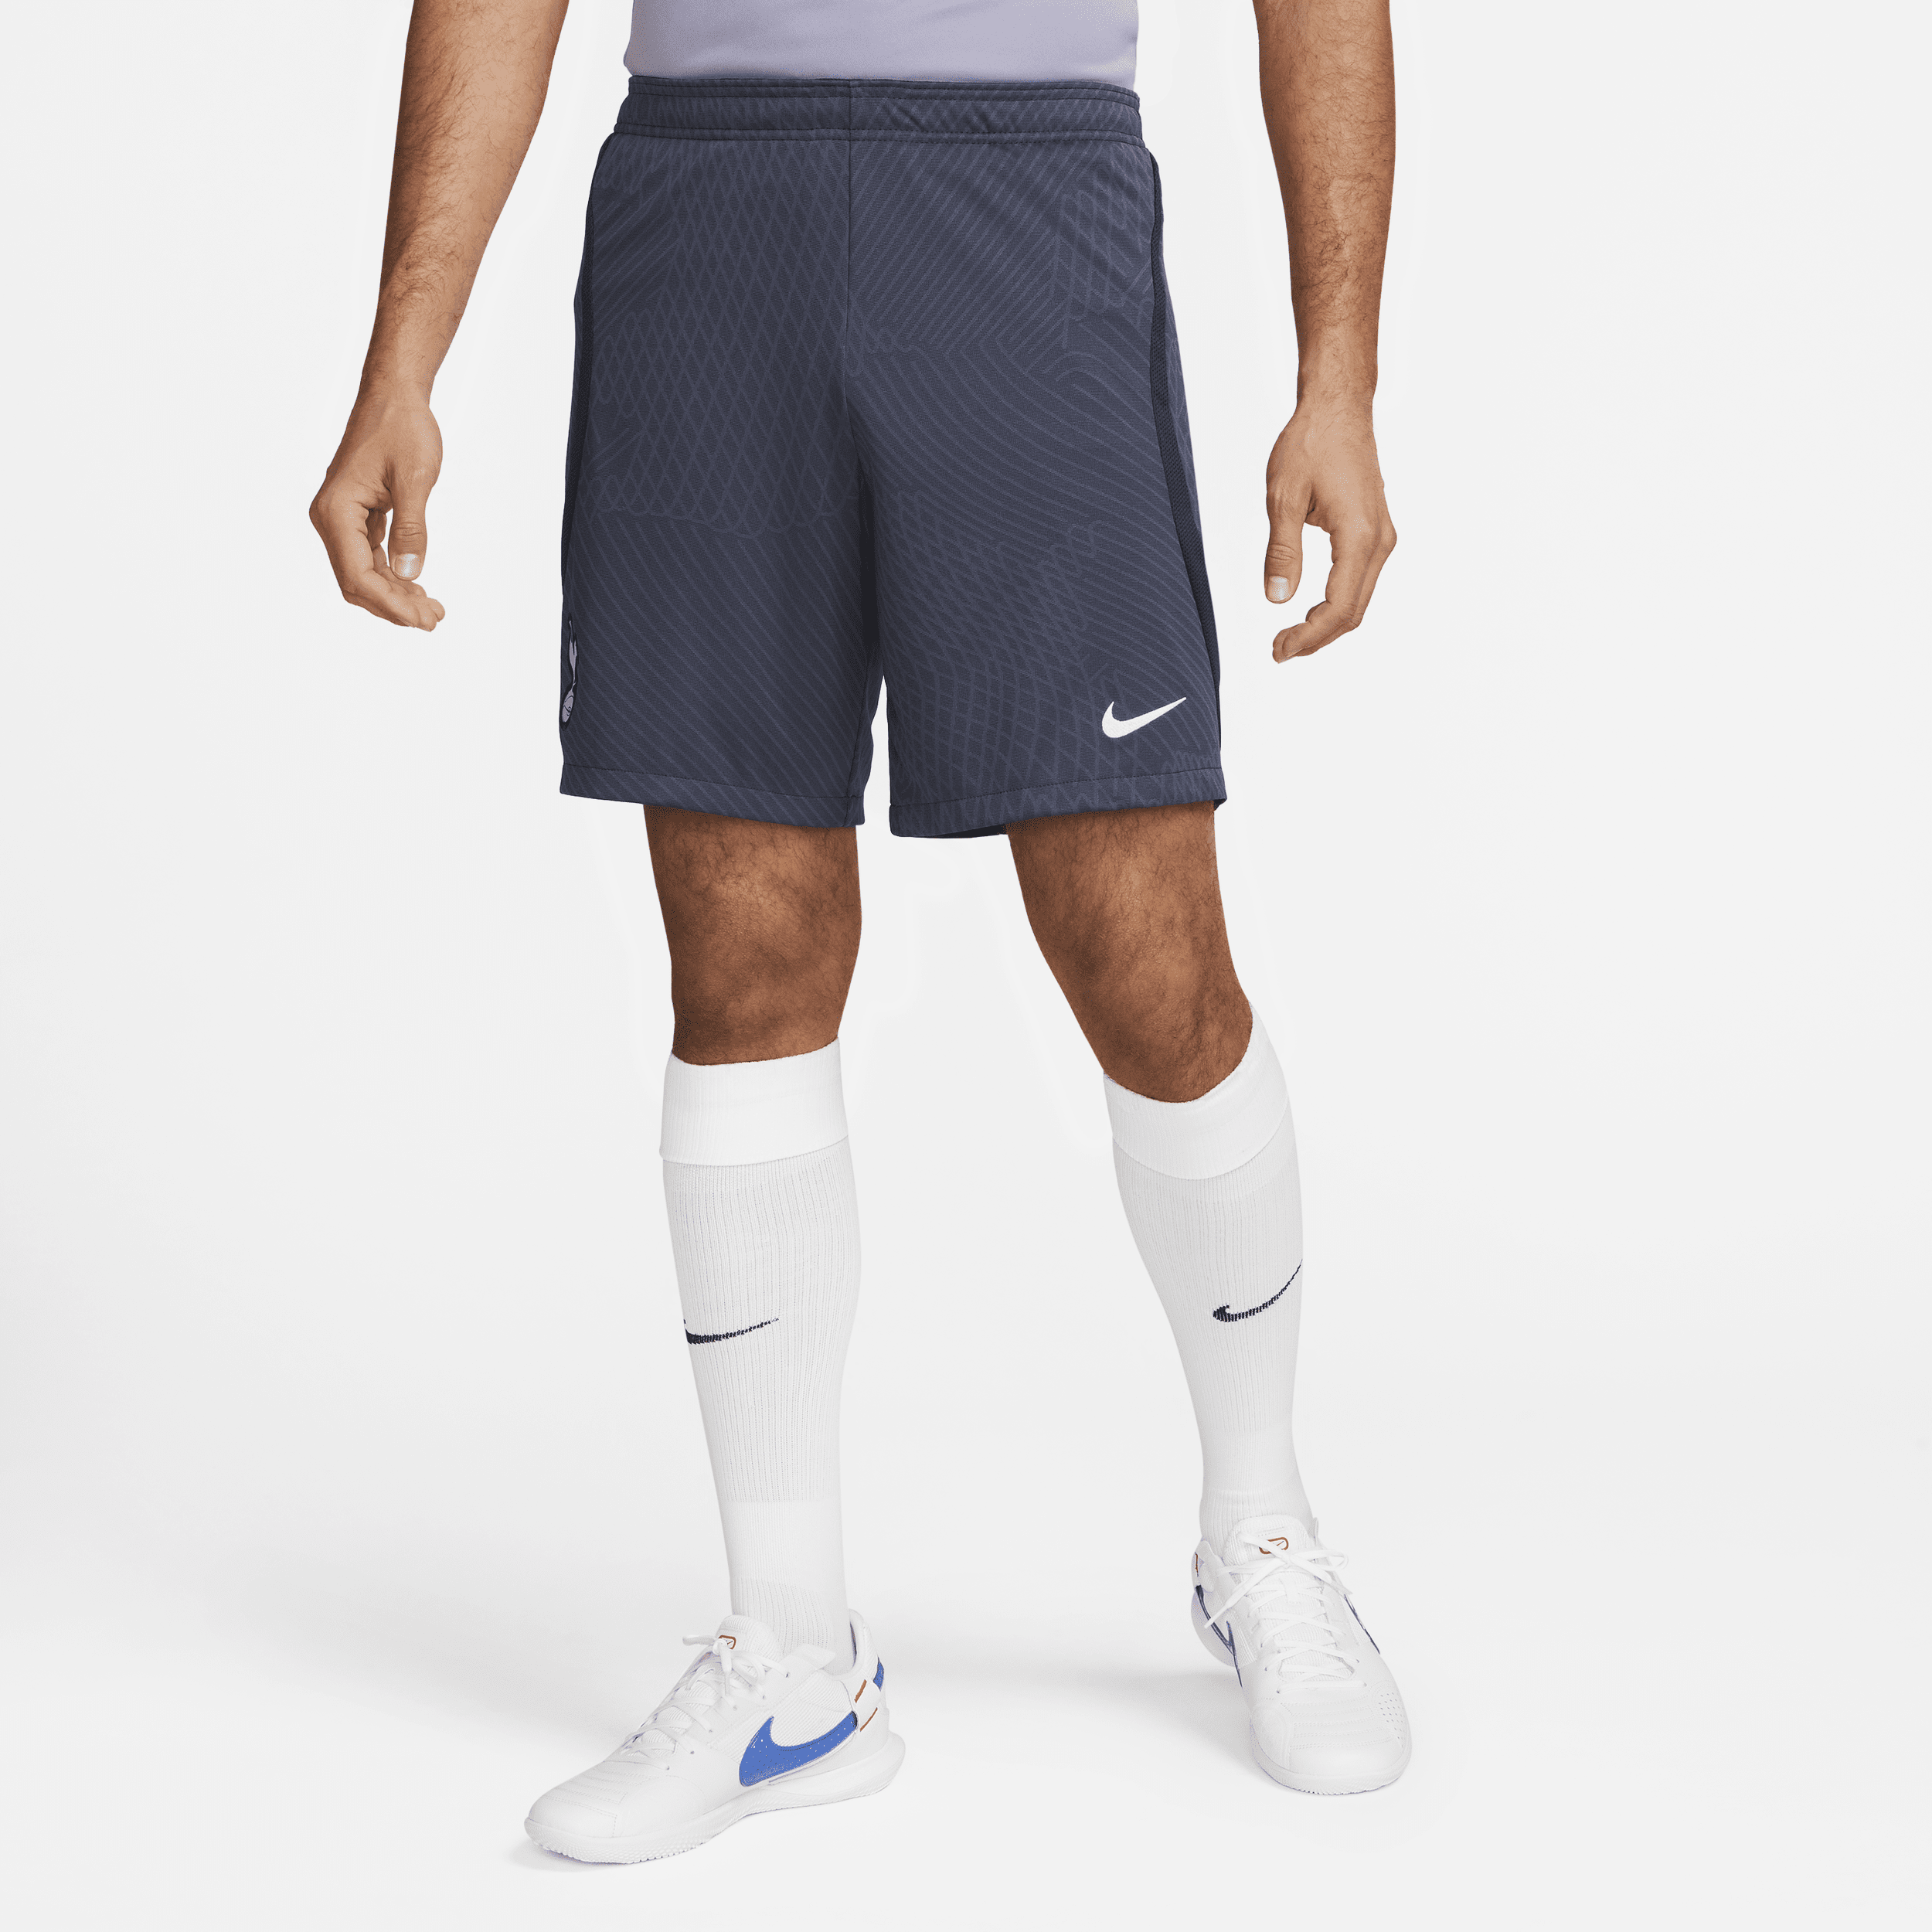 Tottenham Hotspur Strike Nike knit voetbalshorts met Dri-FIT voor heren - Blauw